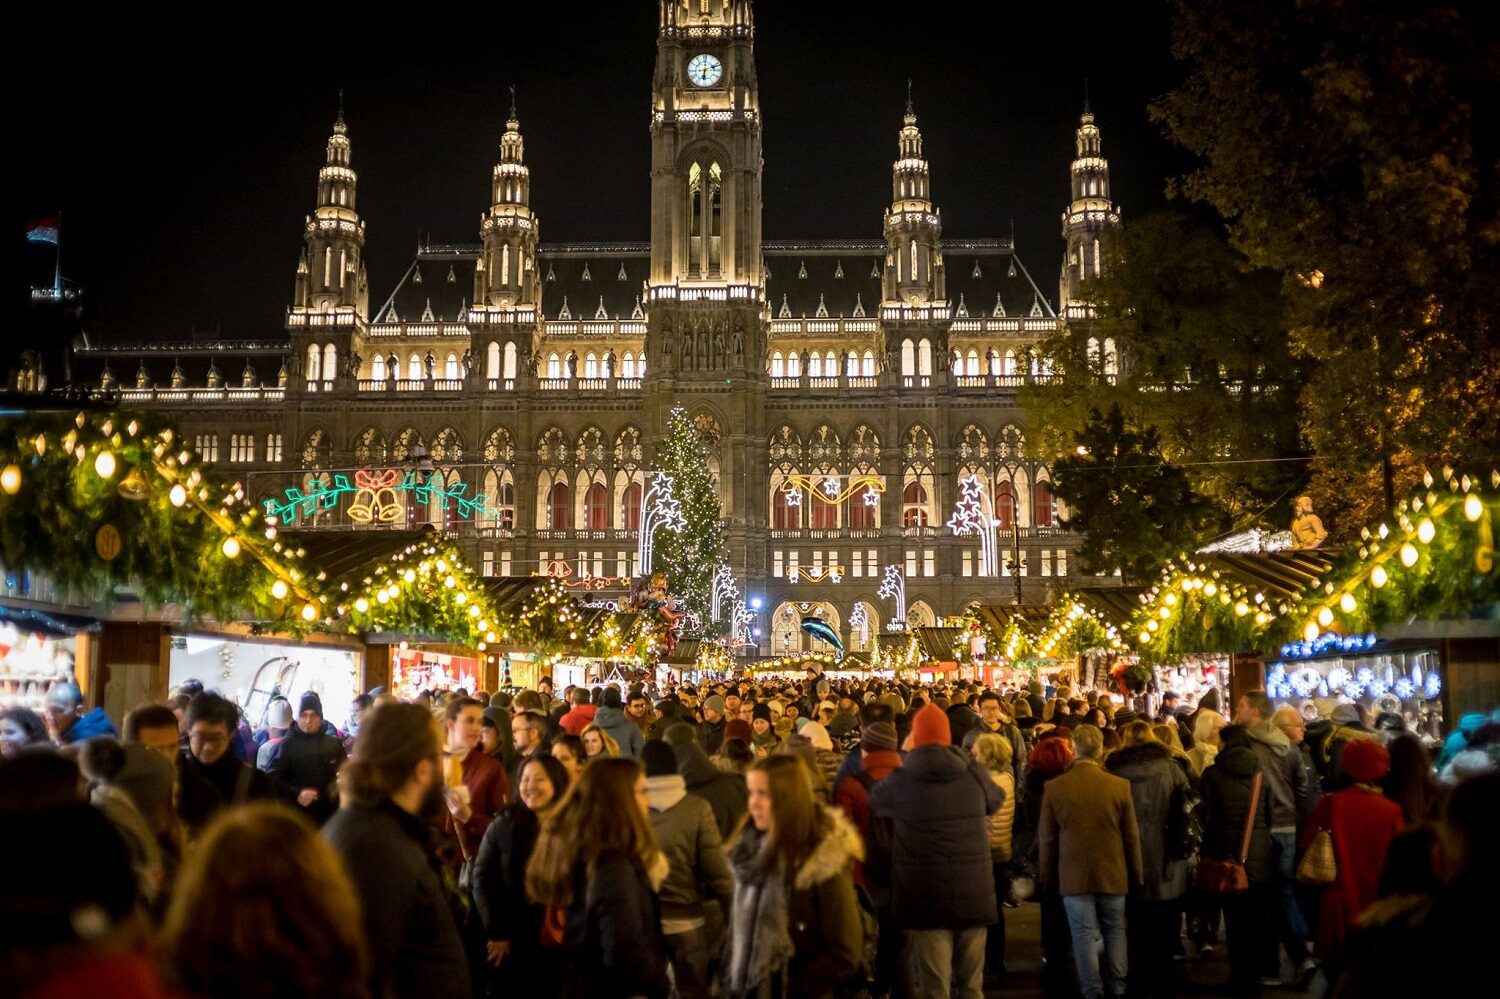 Primaria din Viena fotografiata noaptea, iluminata, iar in plrim plan casute decorate festiv si oameni care se plimbă printre ele la targul de Crăciun la Viena